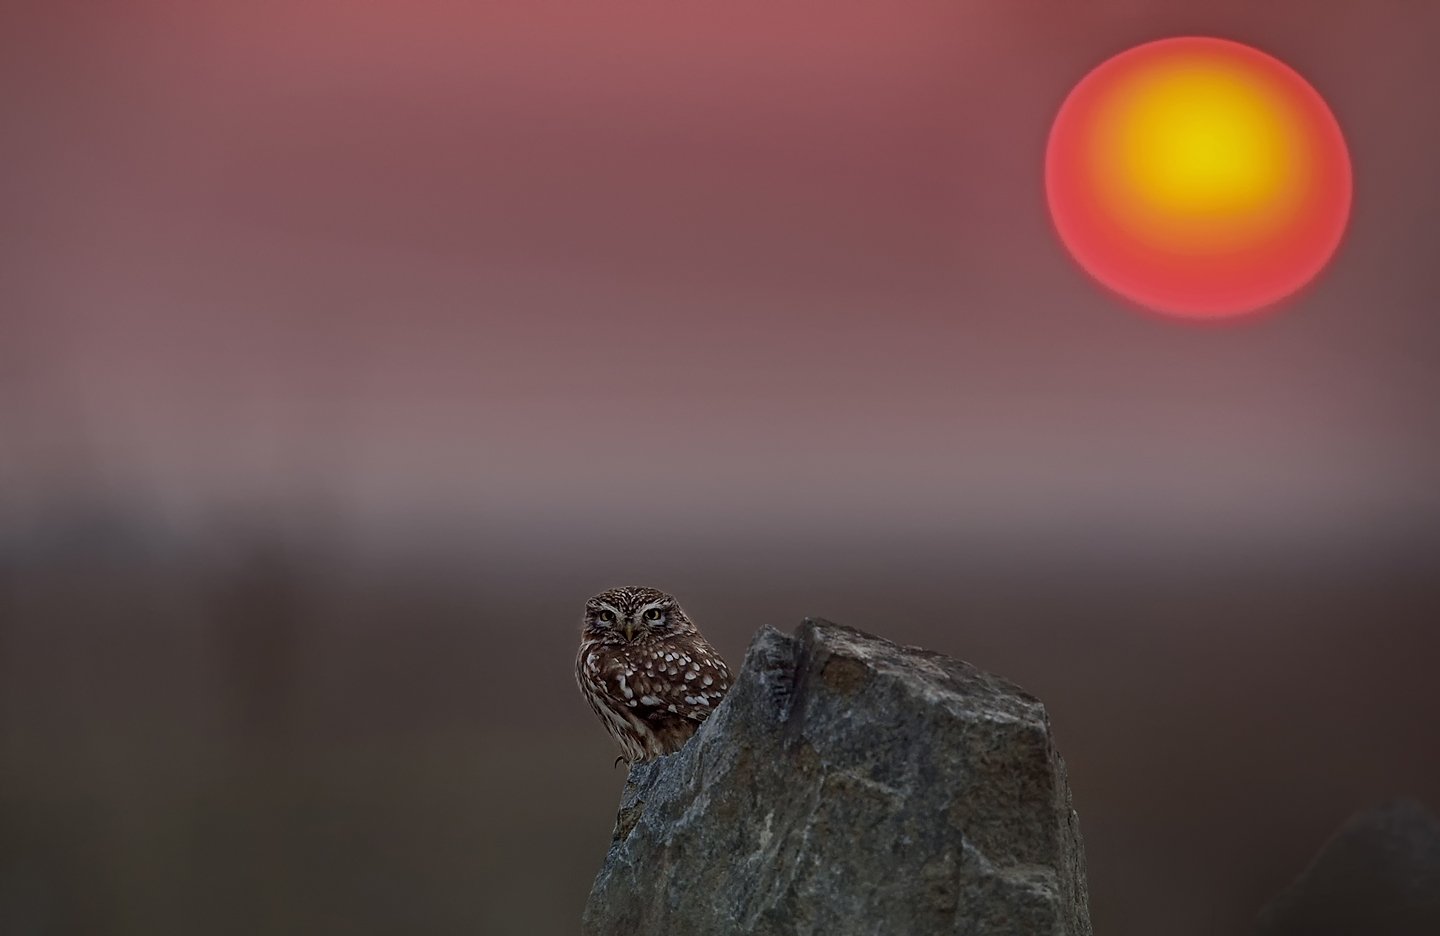 Owl & Sunset, KIM SUK EUN